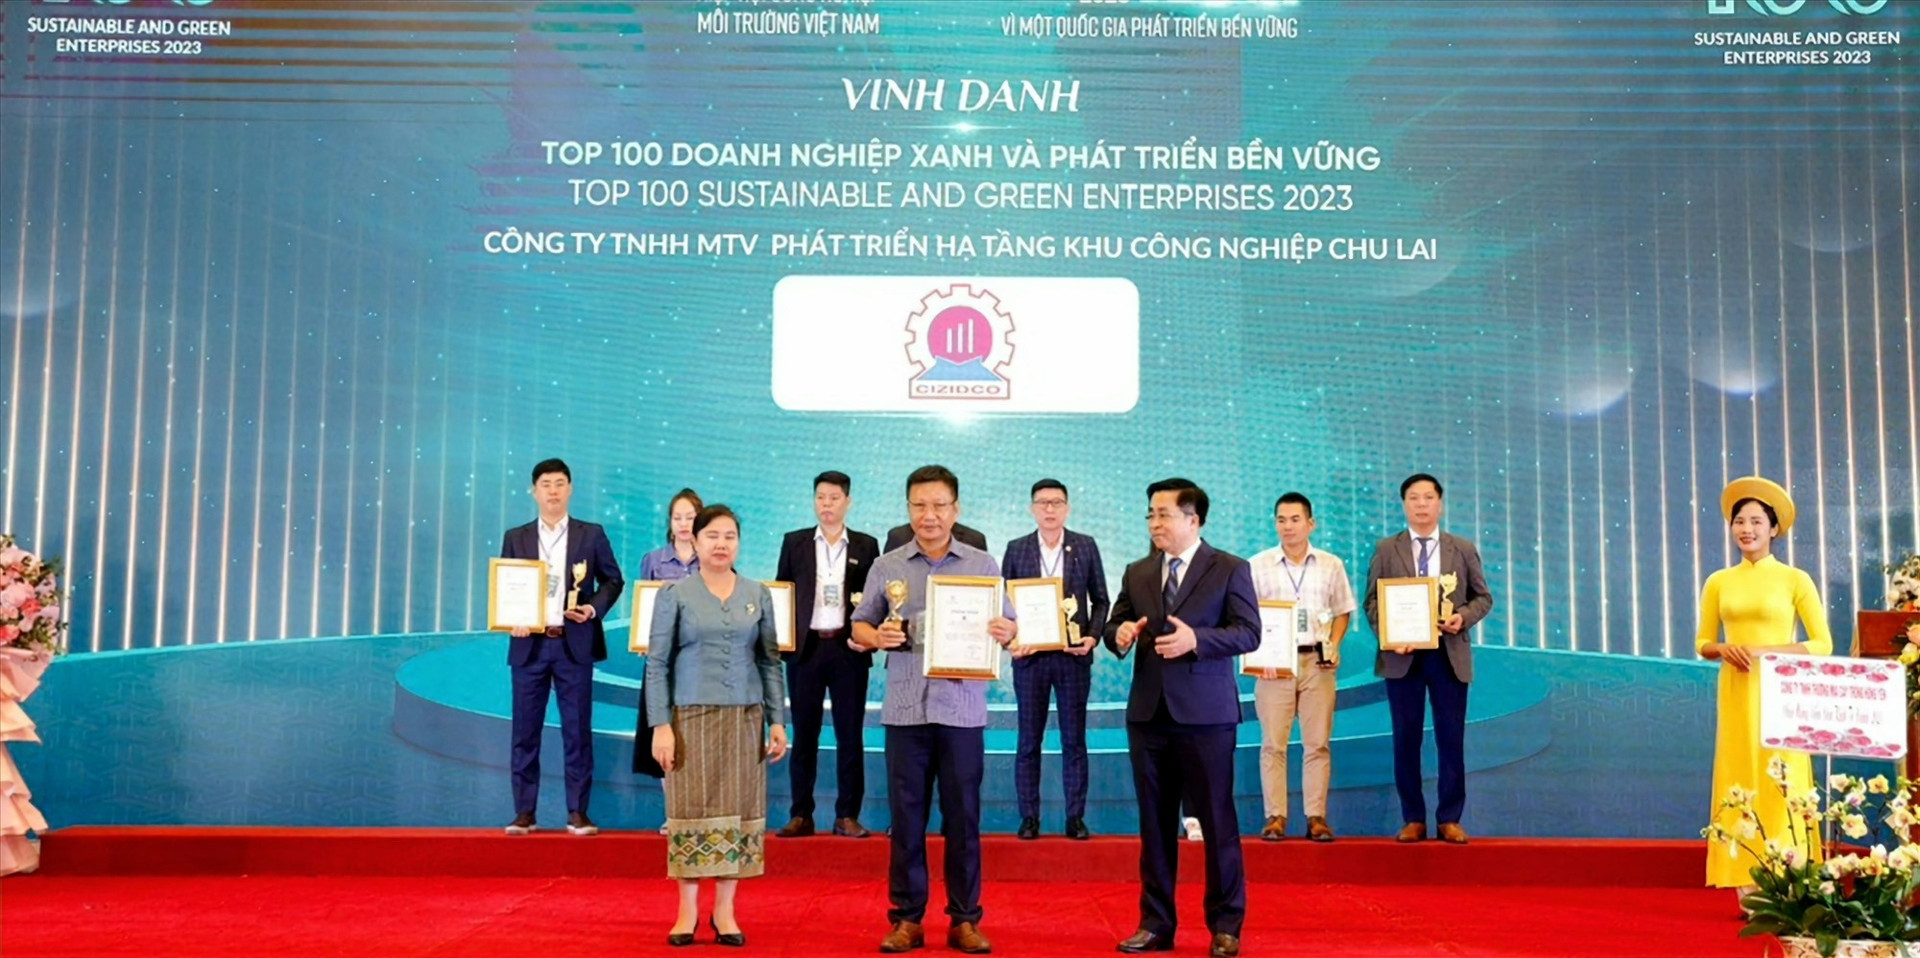 Giám đốc CIZIDCO Lê Ngọc Thủy nhận Top 100 Doanh nghiệp xanh và phát triển bền vững & Top 100 Khu công nghiệp xanh thân thiện với mội trường năm 2023. Ảnh NTB